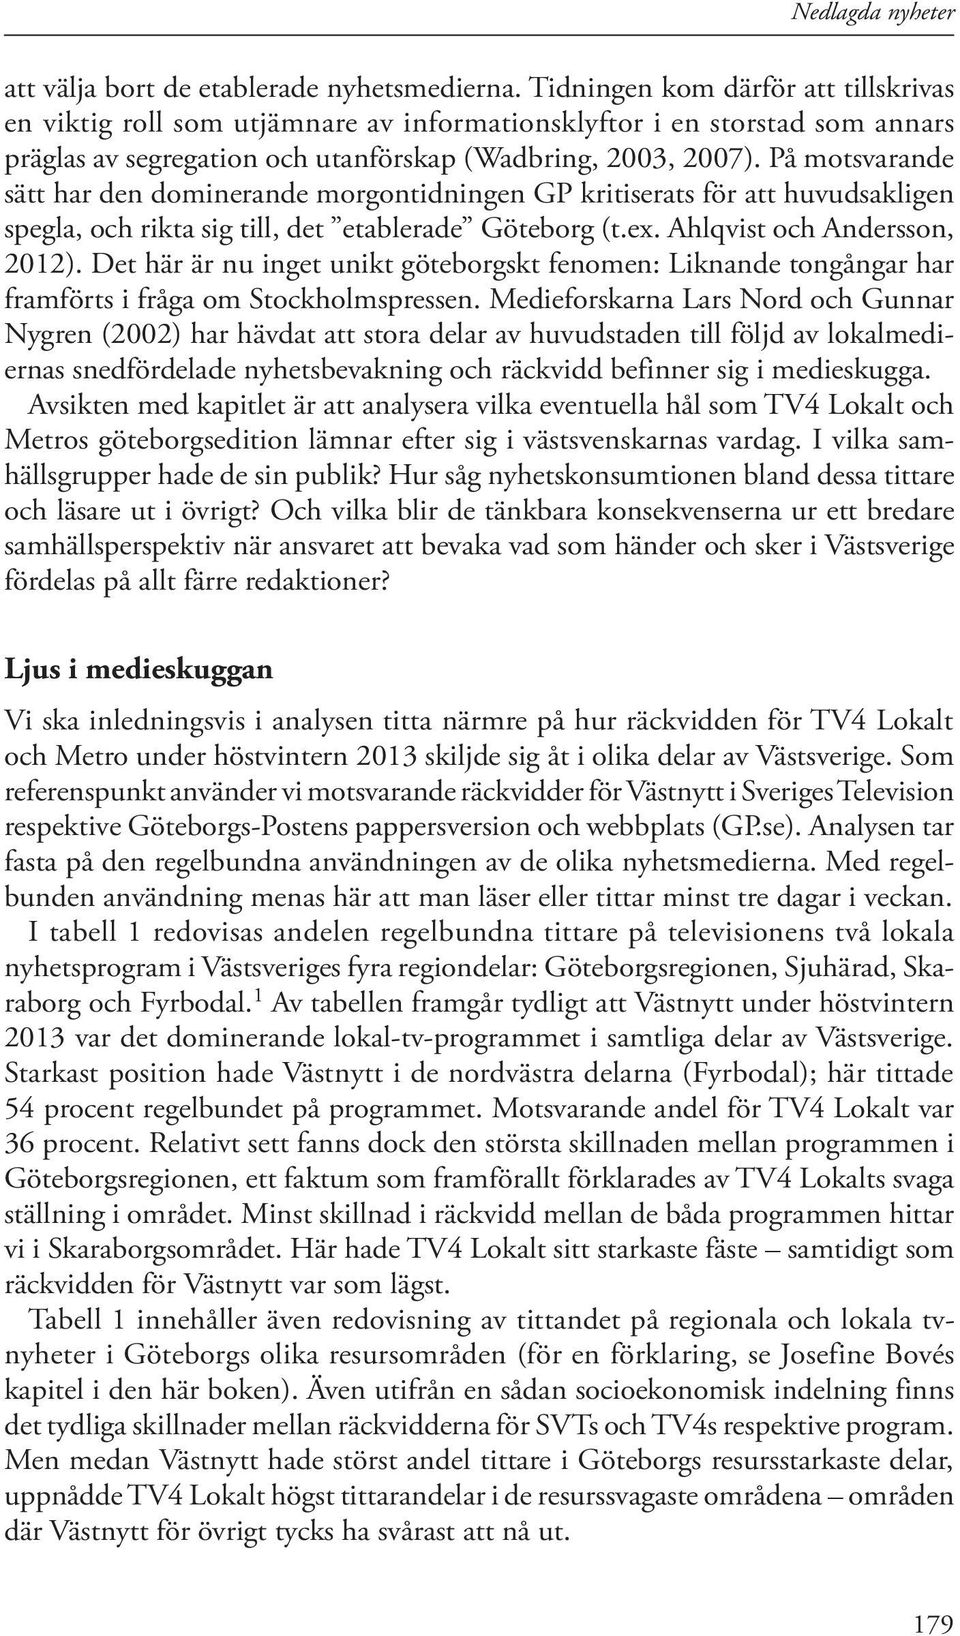 På motsvarande sätt har den dominerande morgontidningen GP kritiserats för att huvudsakligen spegla, och rikta sig till, det etablerade Göteborg (t.ex. Ahlqvist och Andersson, 2012).